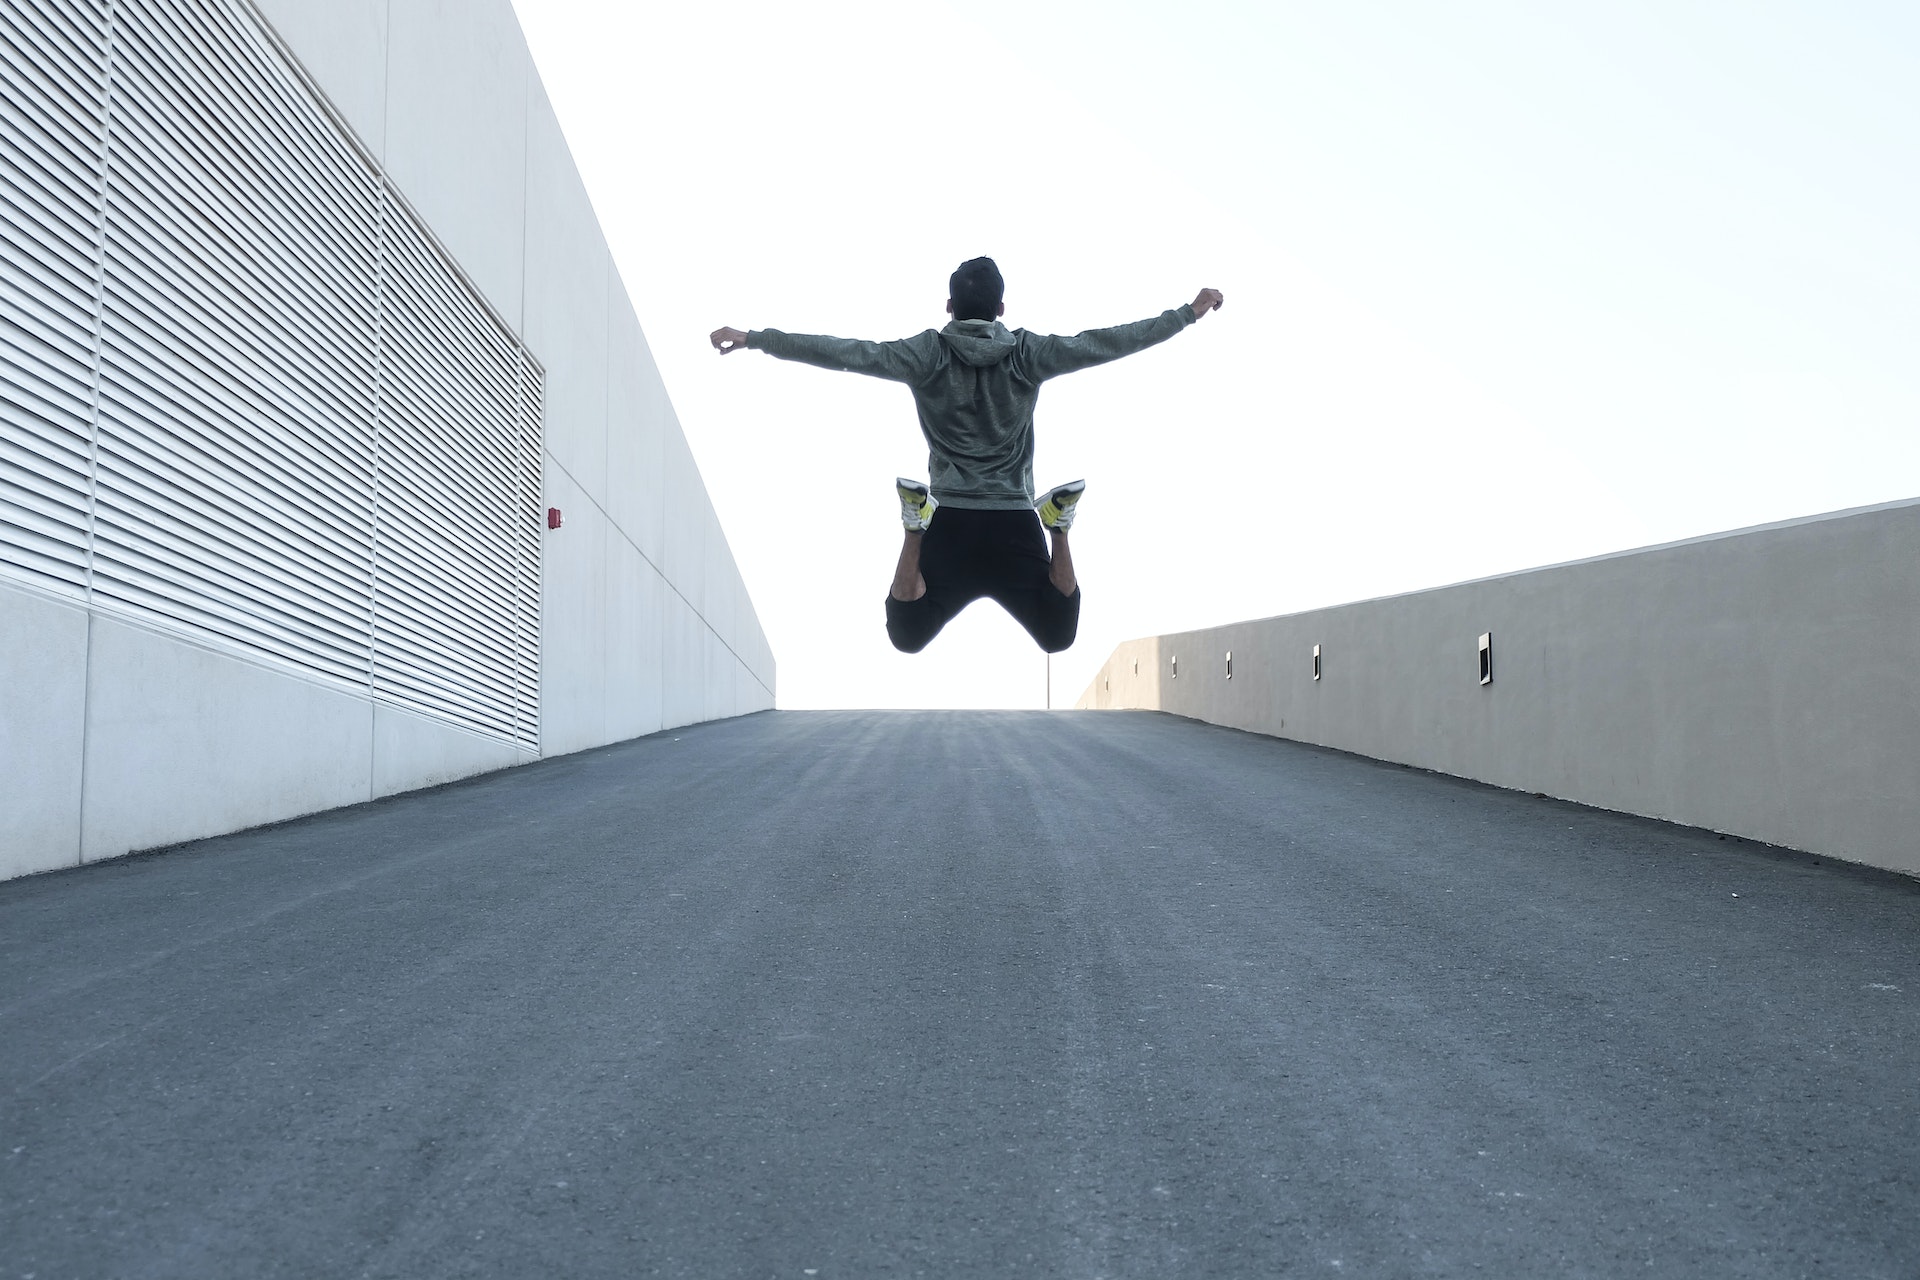 Un homme saute en l'air les bras ouverts | Source : Pexels